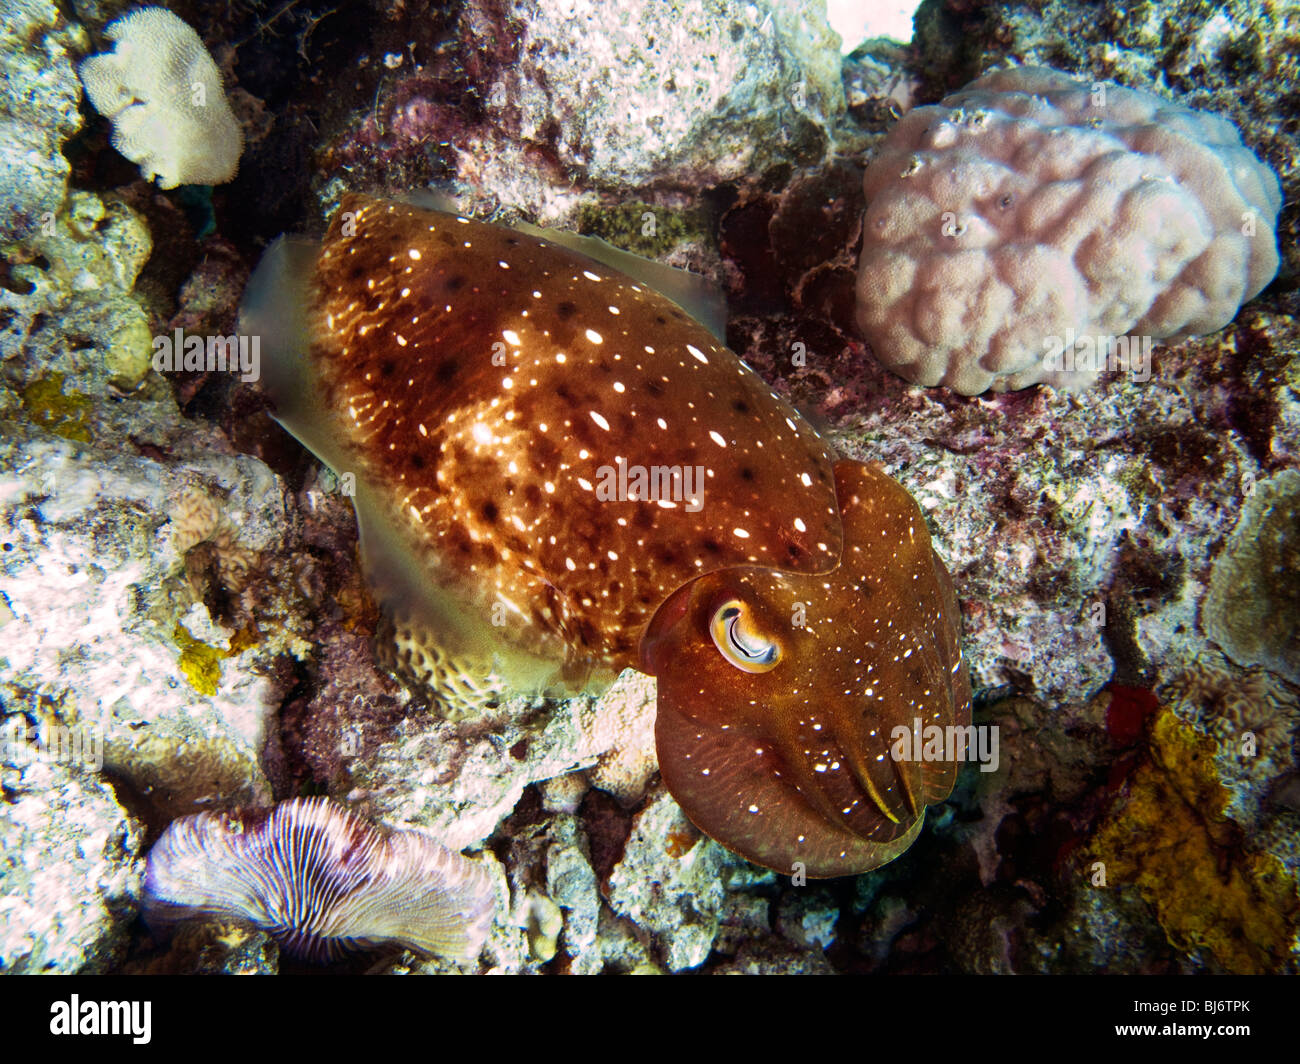 Indonesien, Sulawesi, Wakatobi Nationalpark, Unterwasser, Riff Tintenfisch, Sepia finden (Sepiidae) Stockfoto